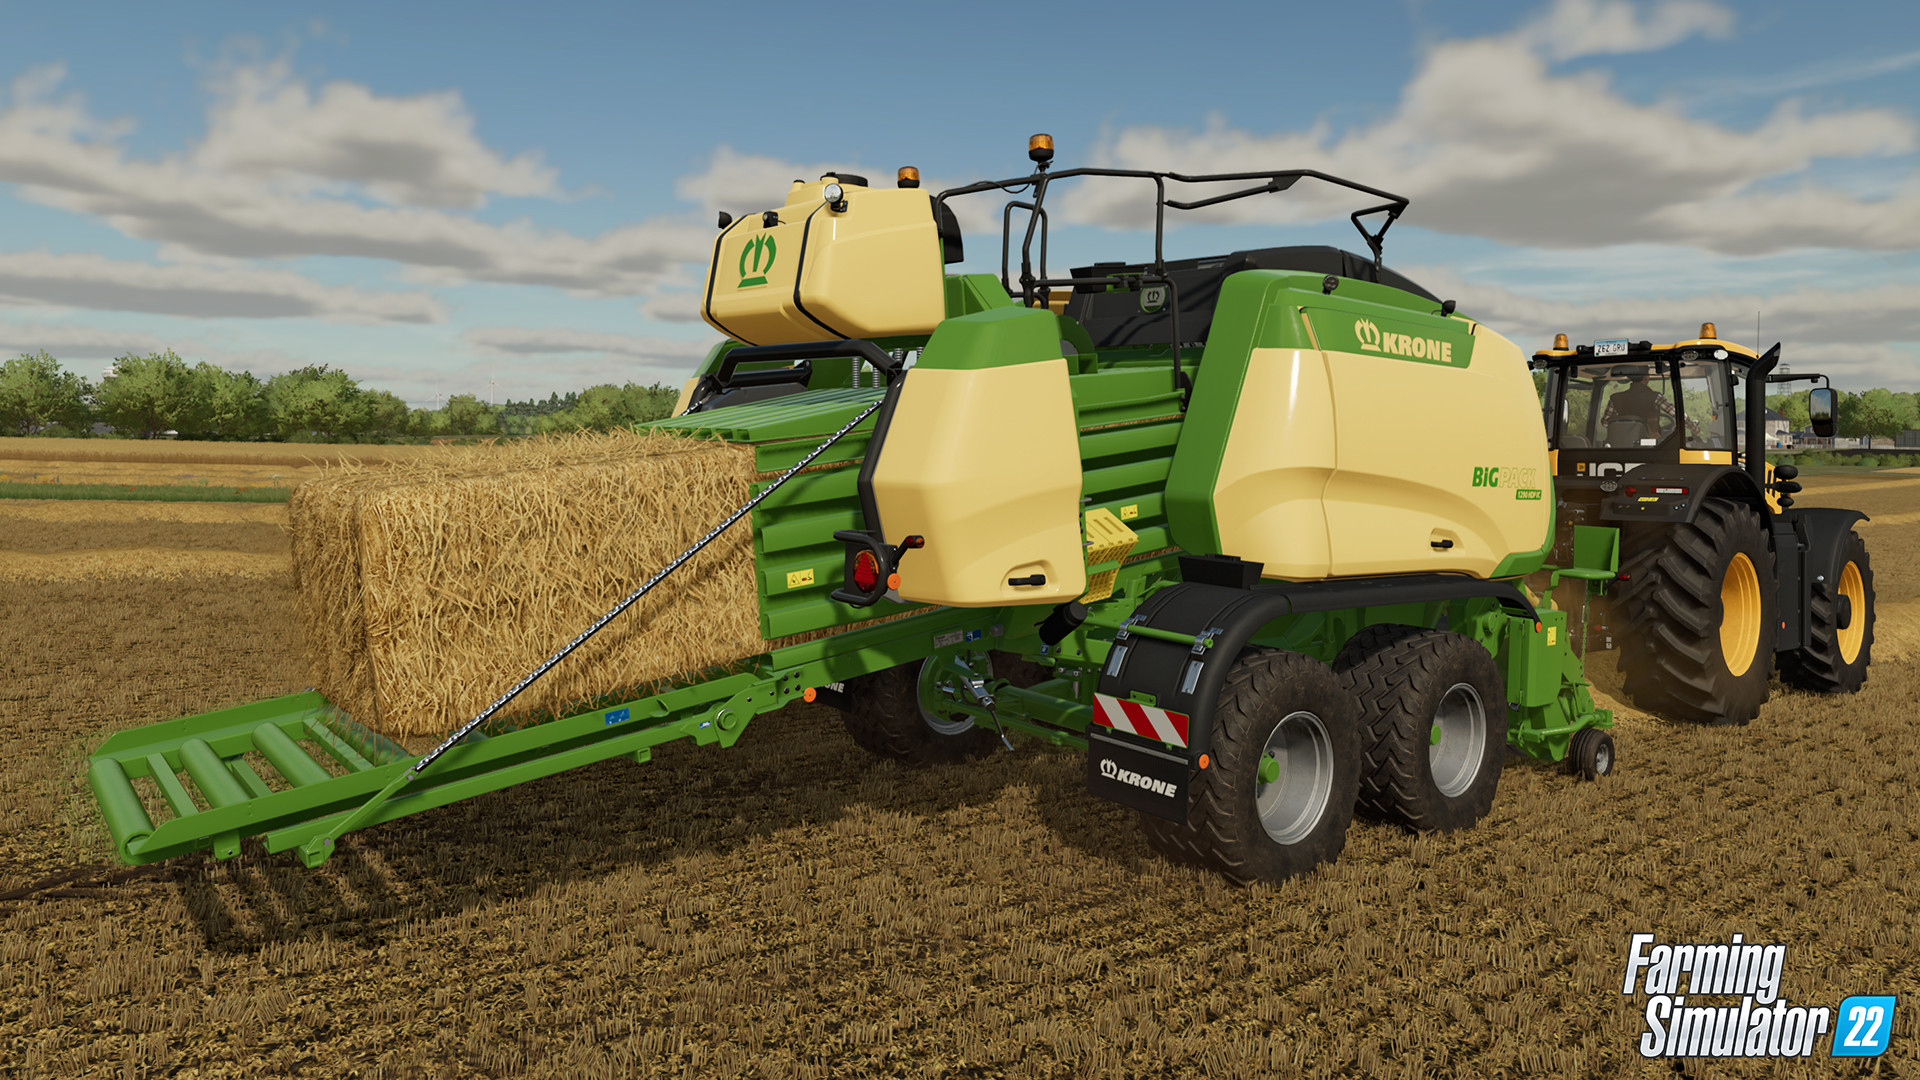 Kaufen Landwirtschafts-Simulator 22